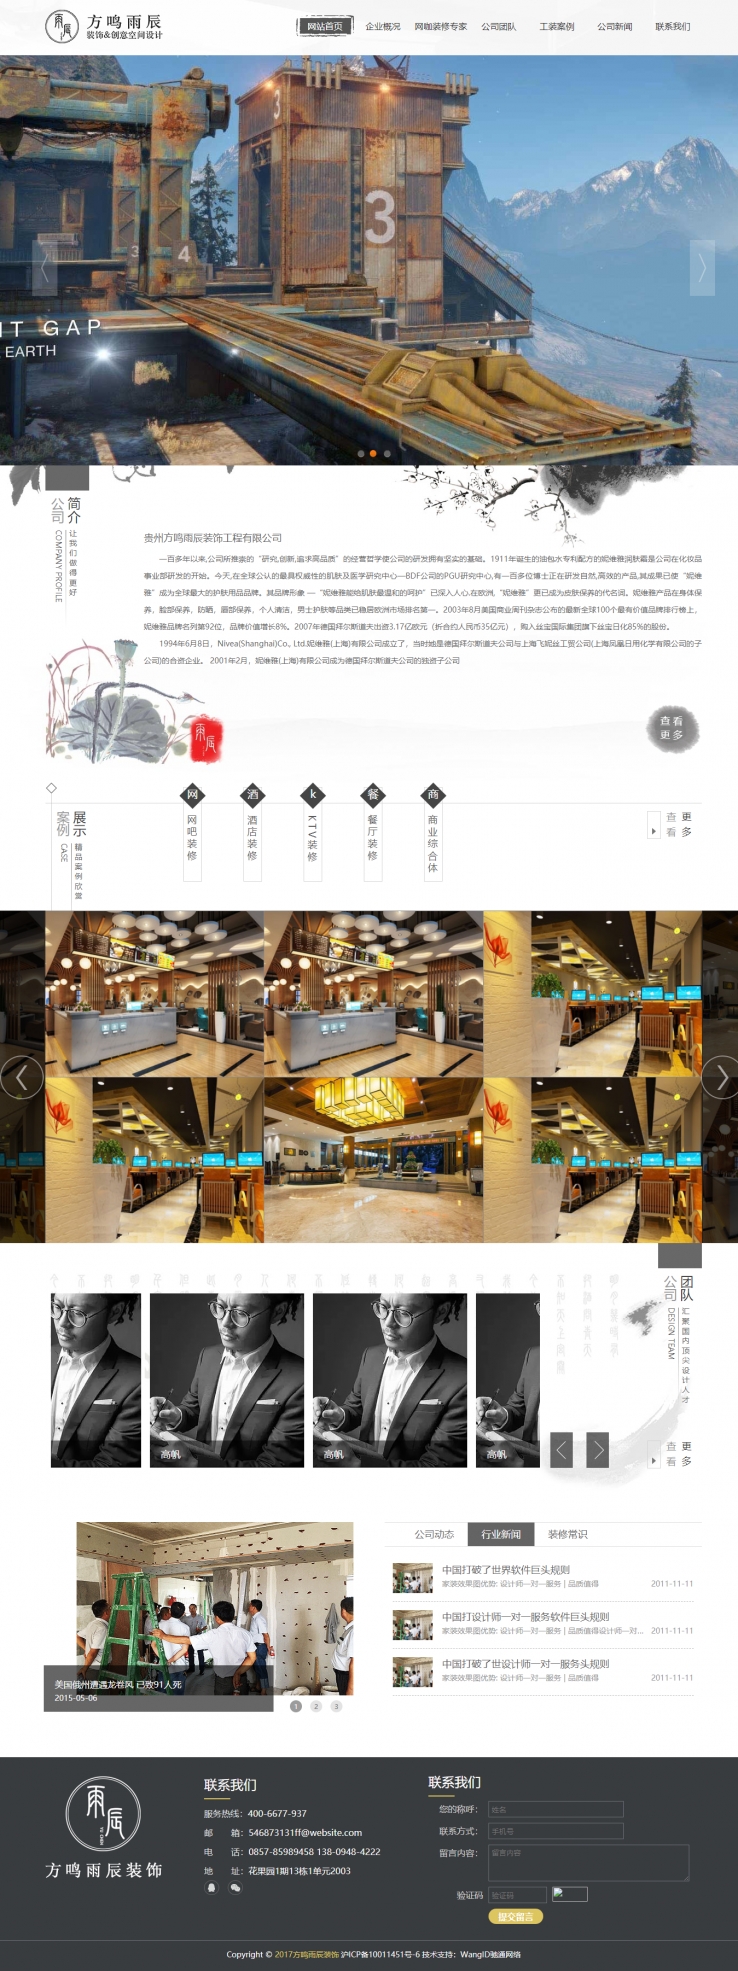 黑色中国风格的室内装饰工程企业网站源码下载